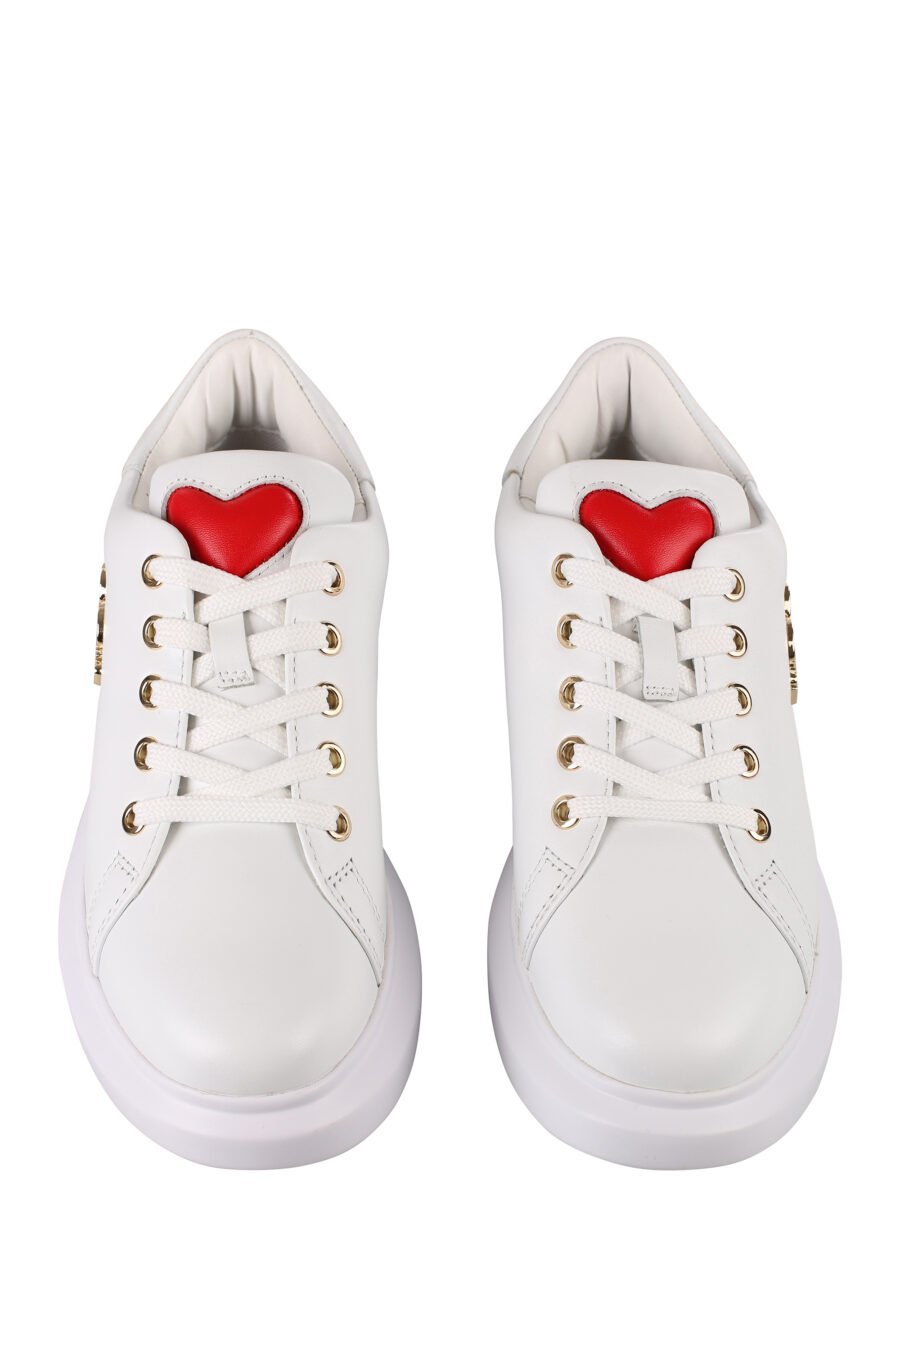 Zapatillas blancas con logo en metal dorado y suela blanca - IMG 1232